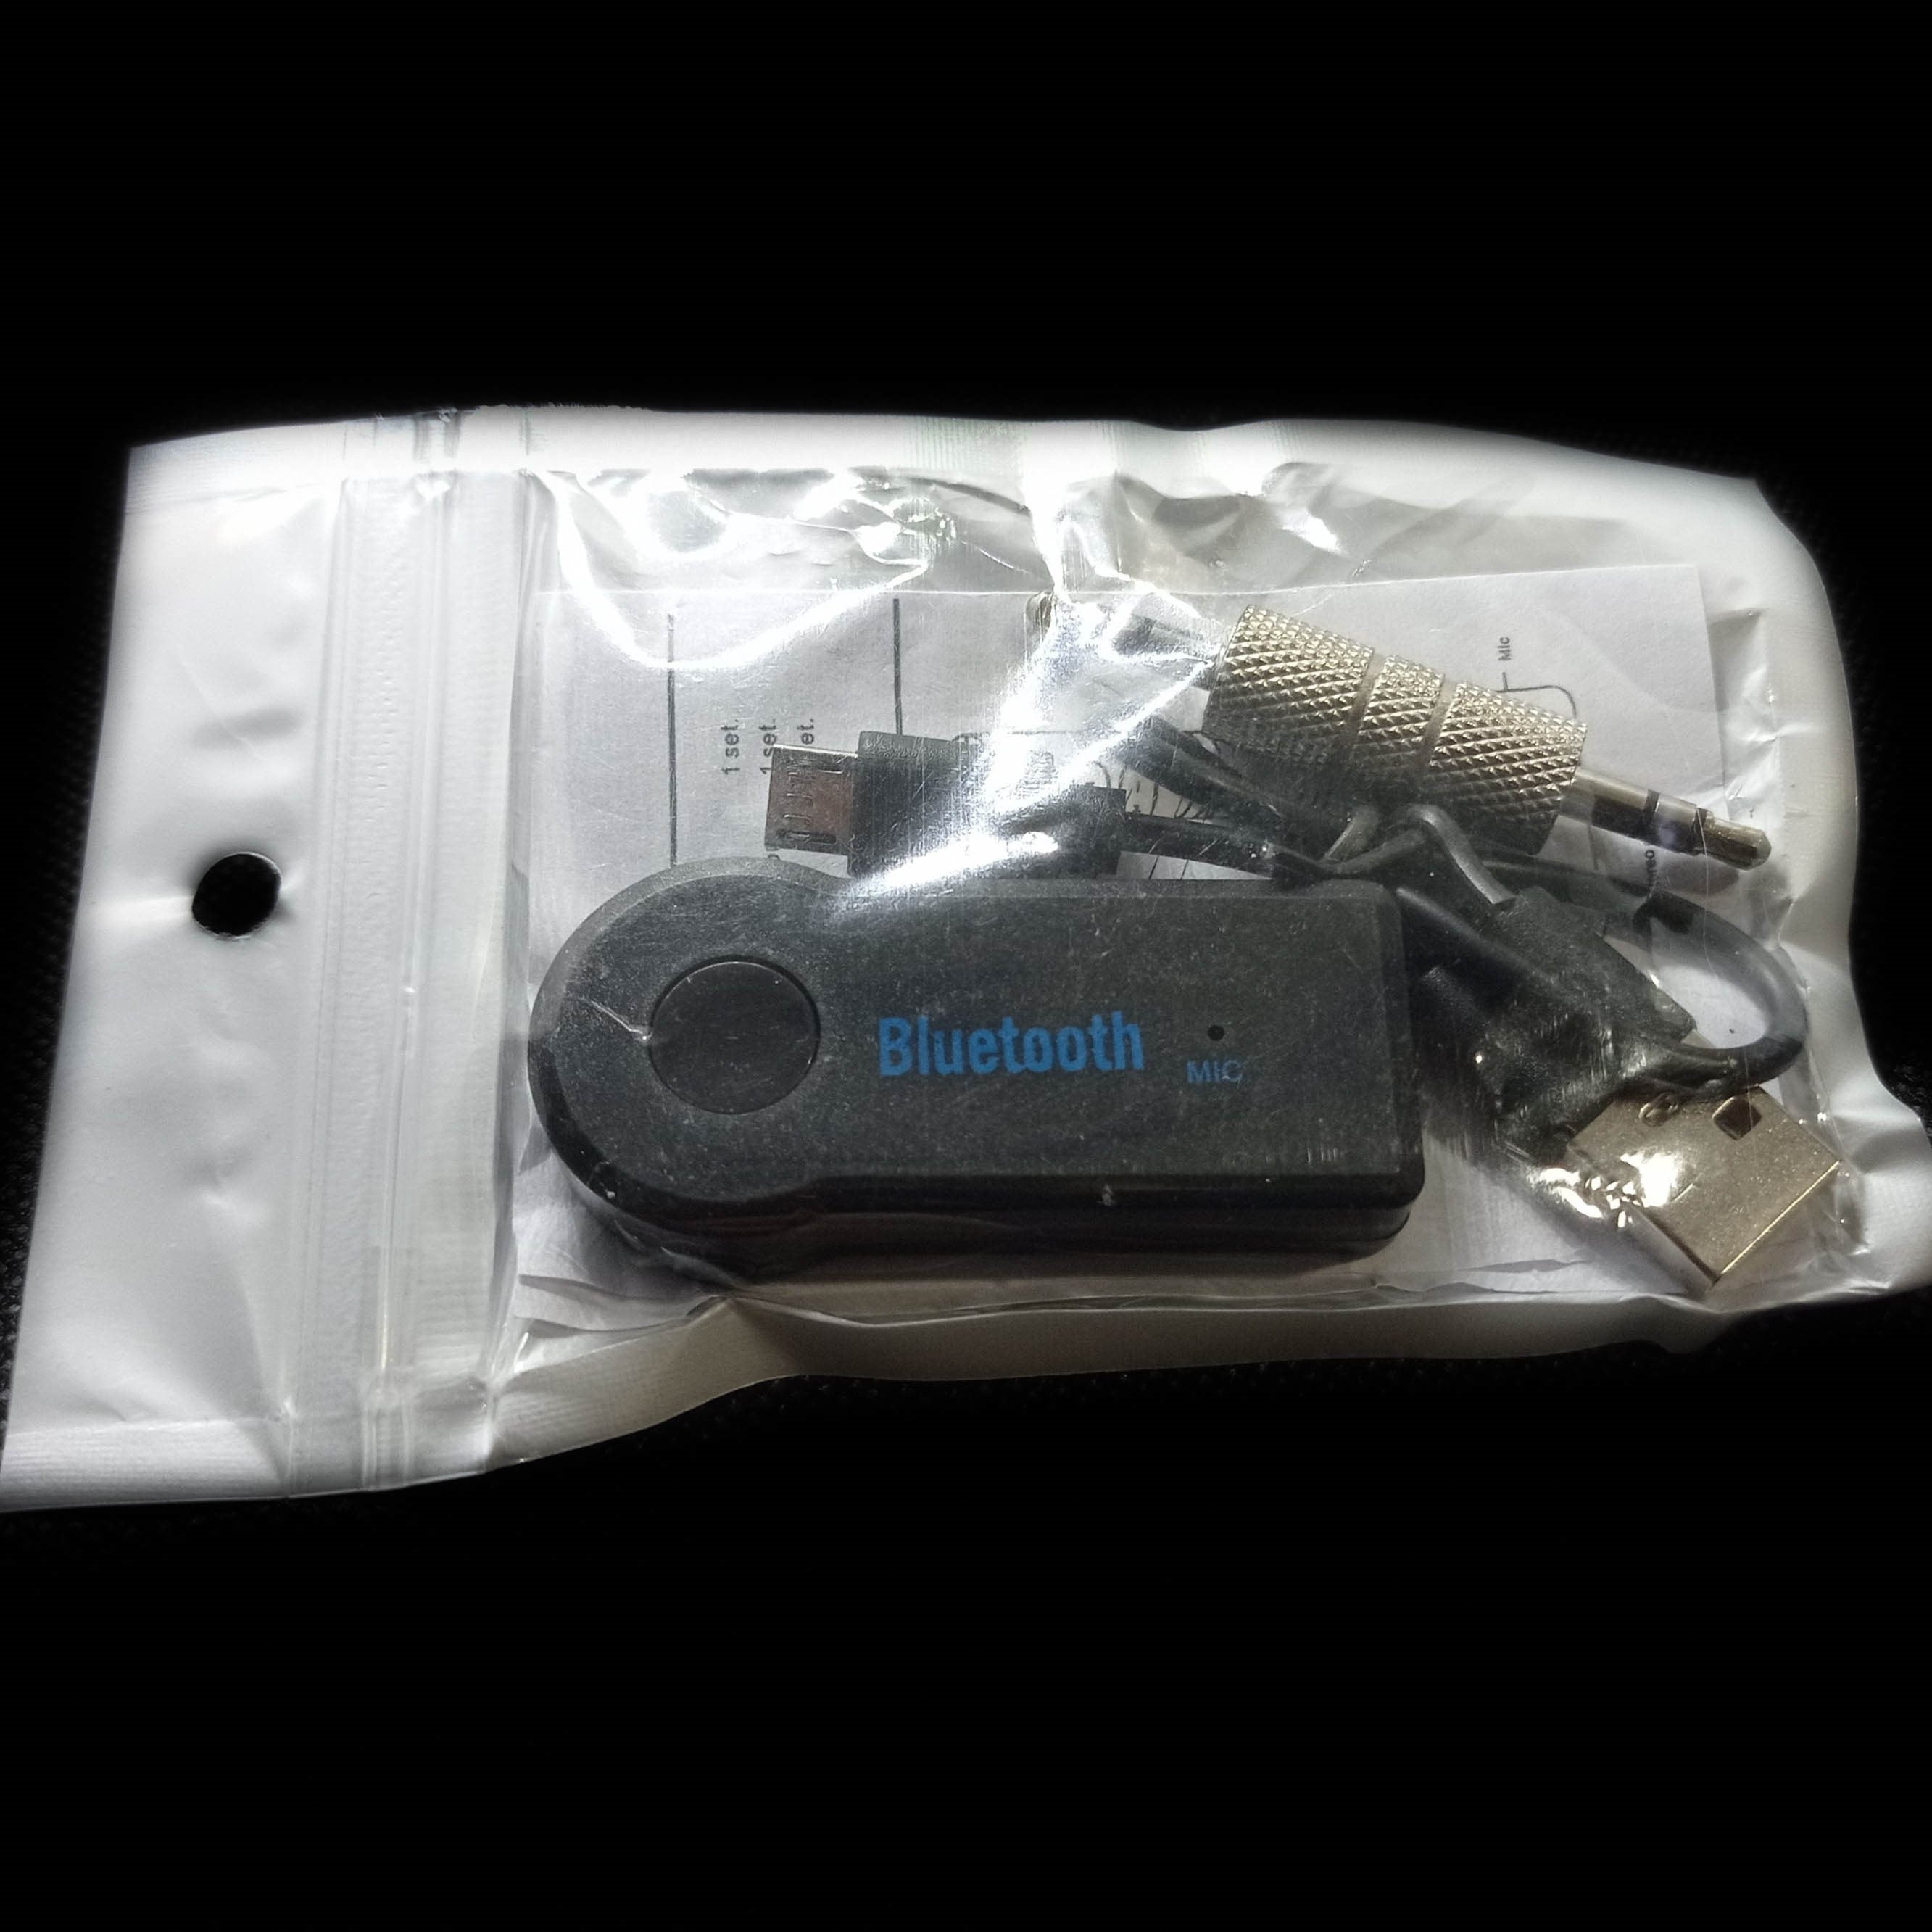 Transmissor Bluetooth AUX dentro da sua caixa, com o produto principal, cabos de ligação e manual de instruções